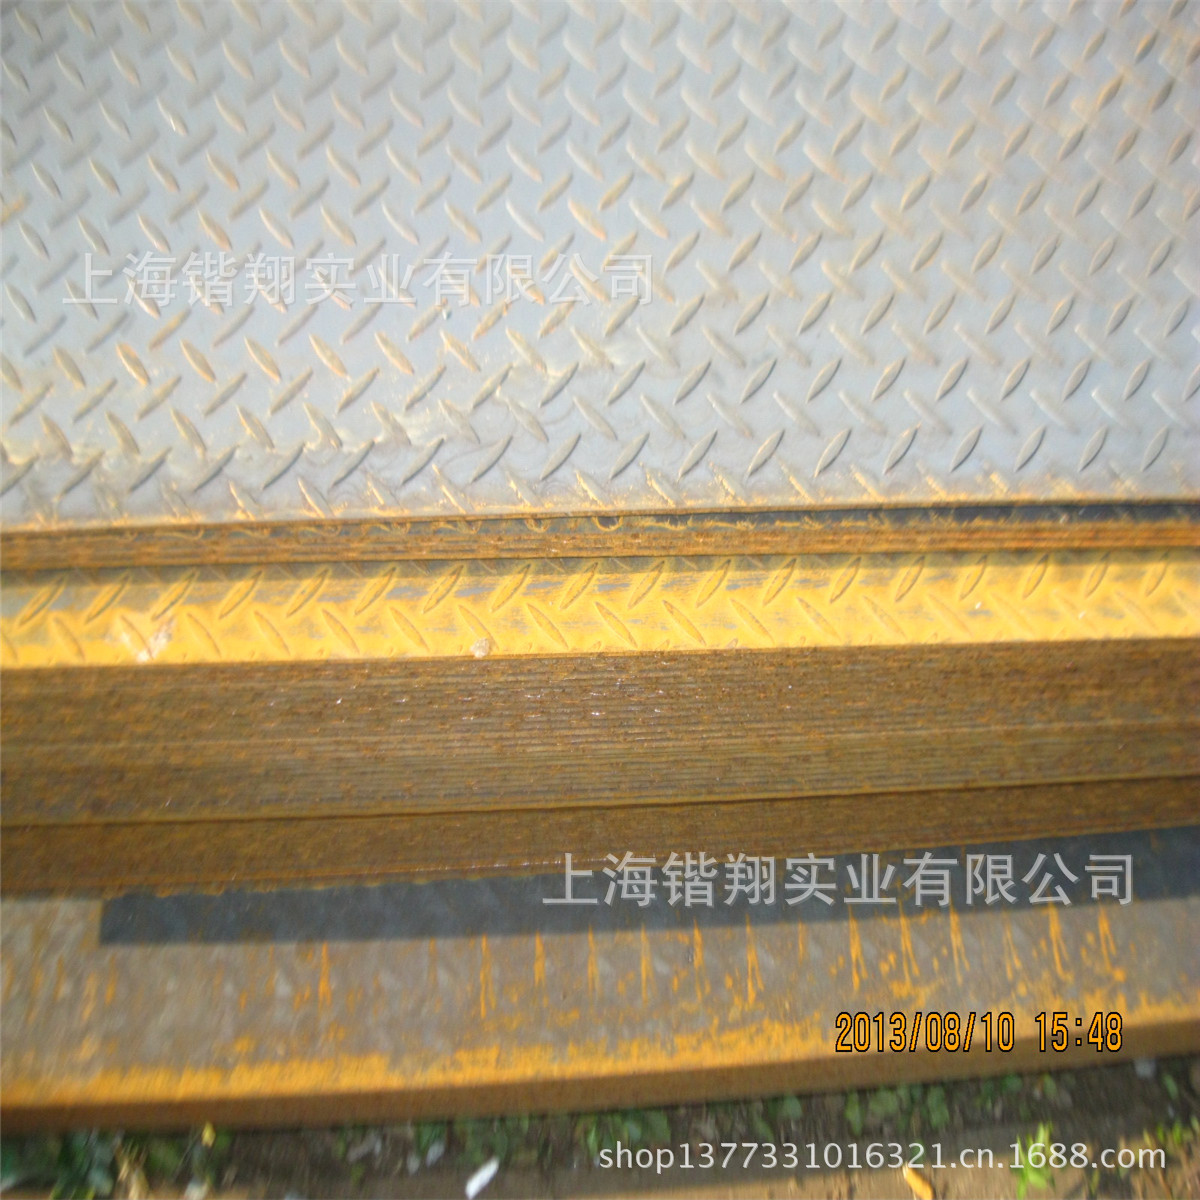 花紋板 美觀大方 防滑鋼板 鞍鋼、萊鋼花紋板